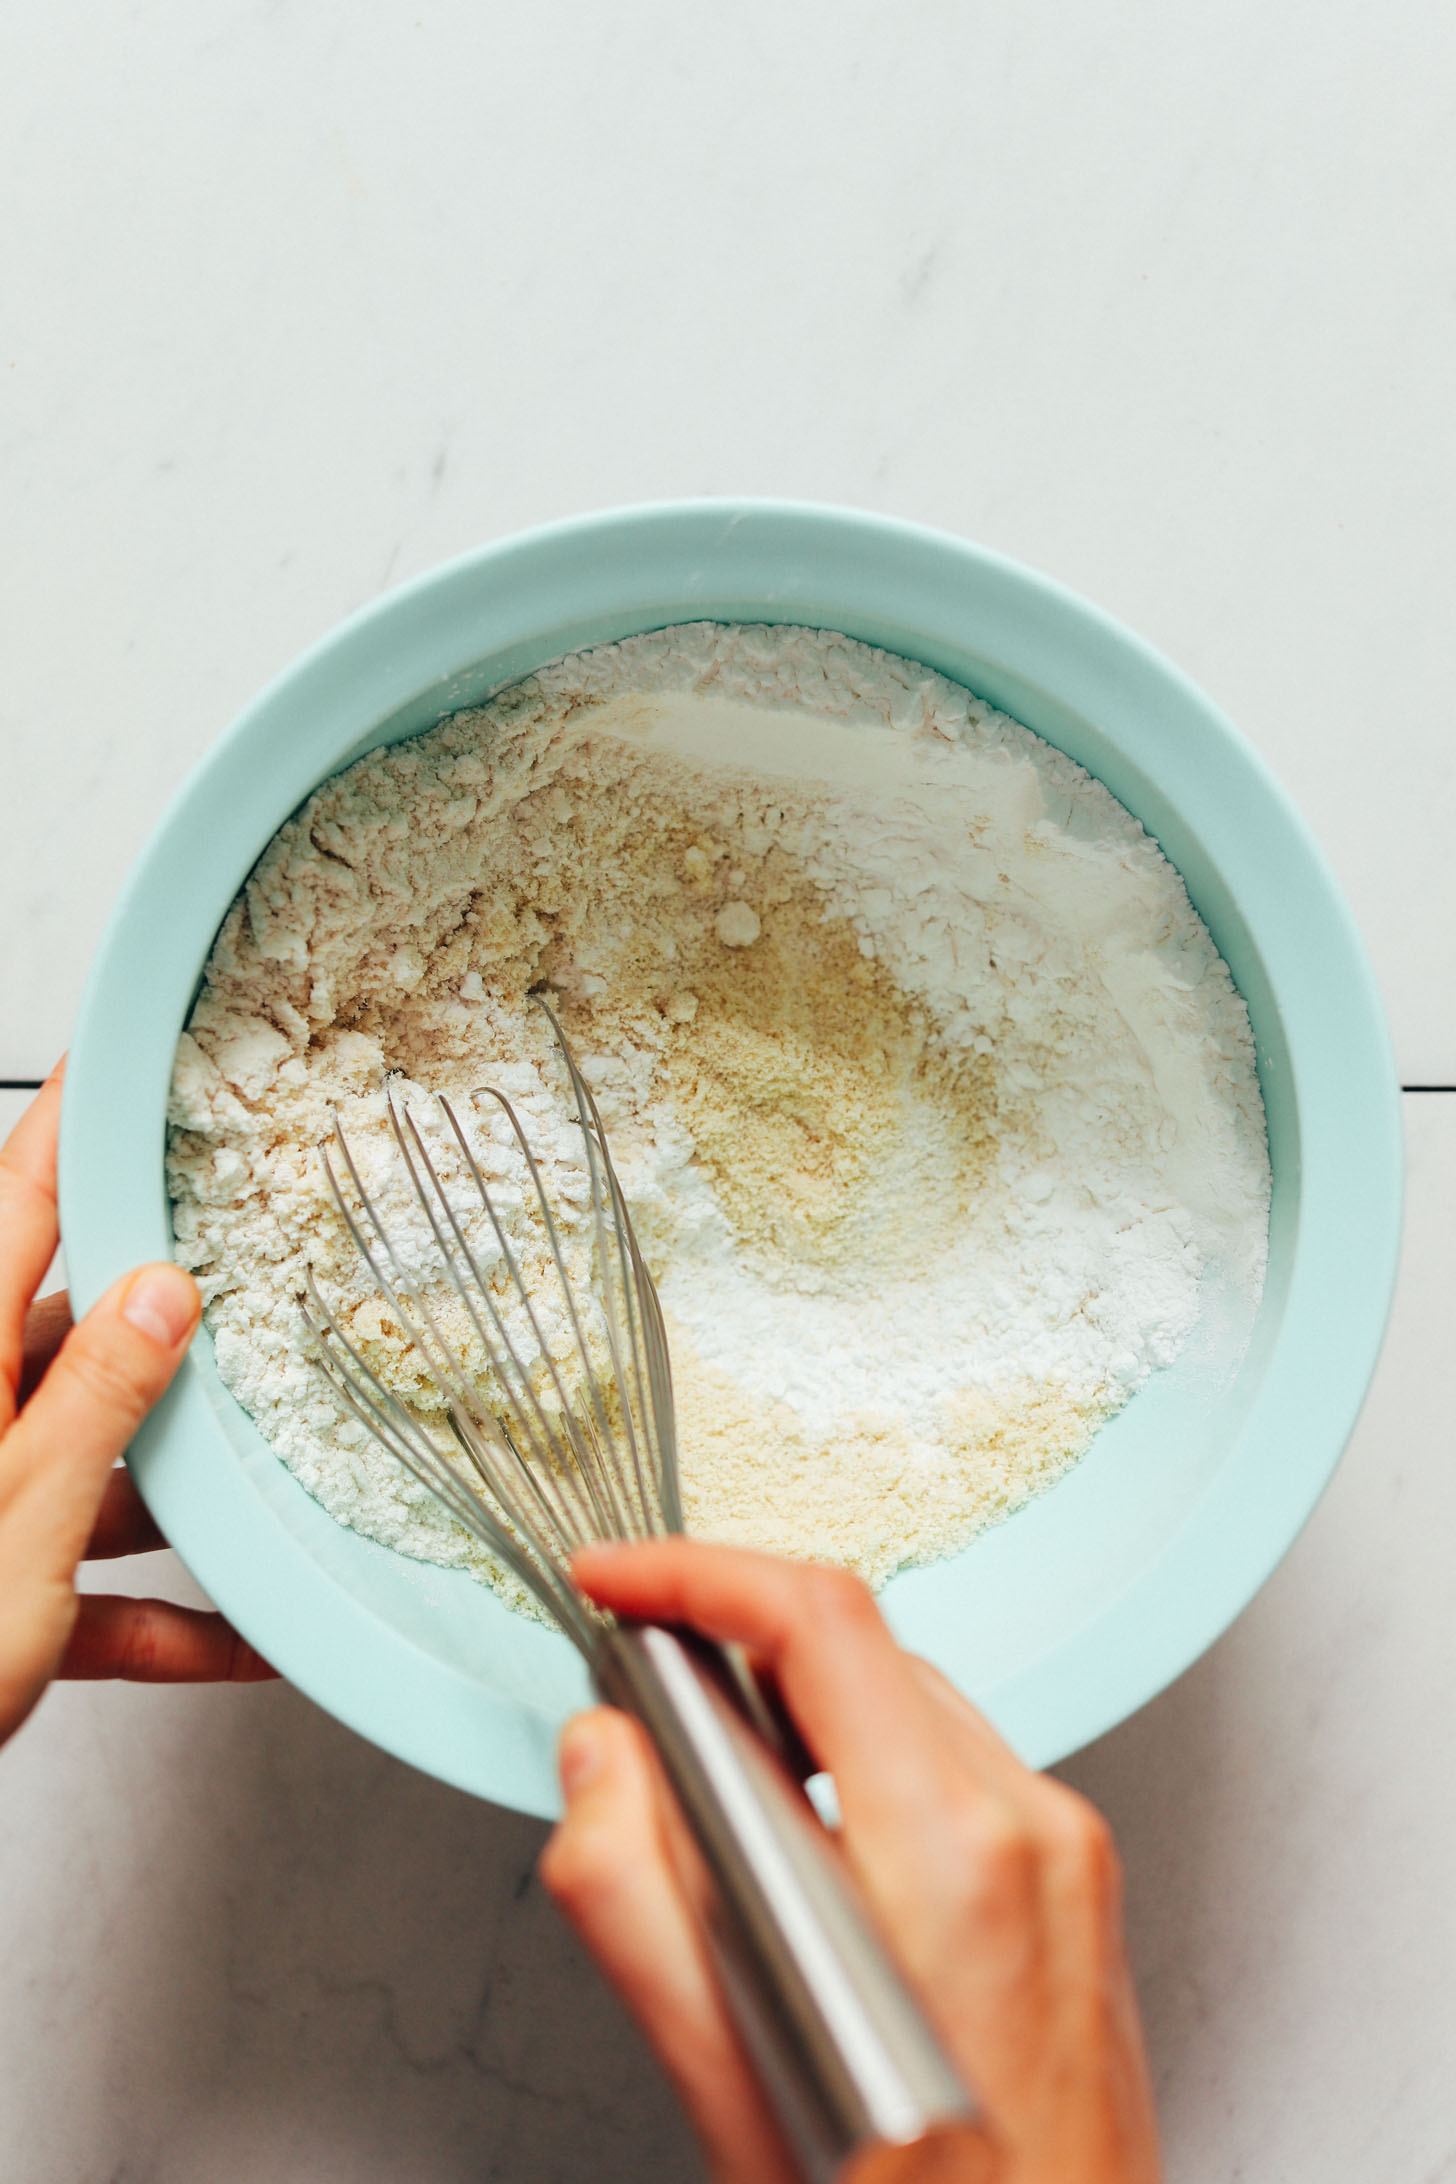 Whisking almond flour, gluten-free flour blend, tapioca flour, baking soda, and sea salt in a bowl